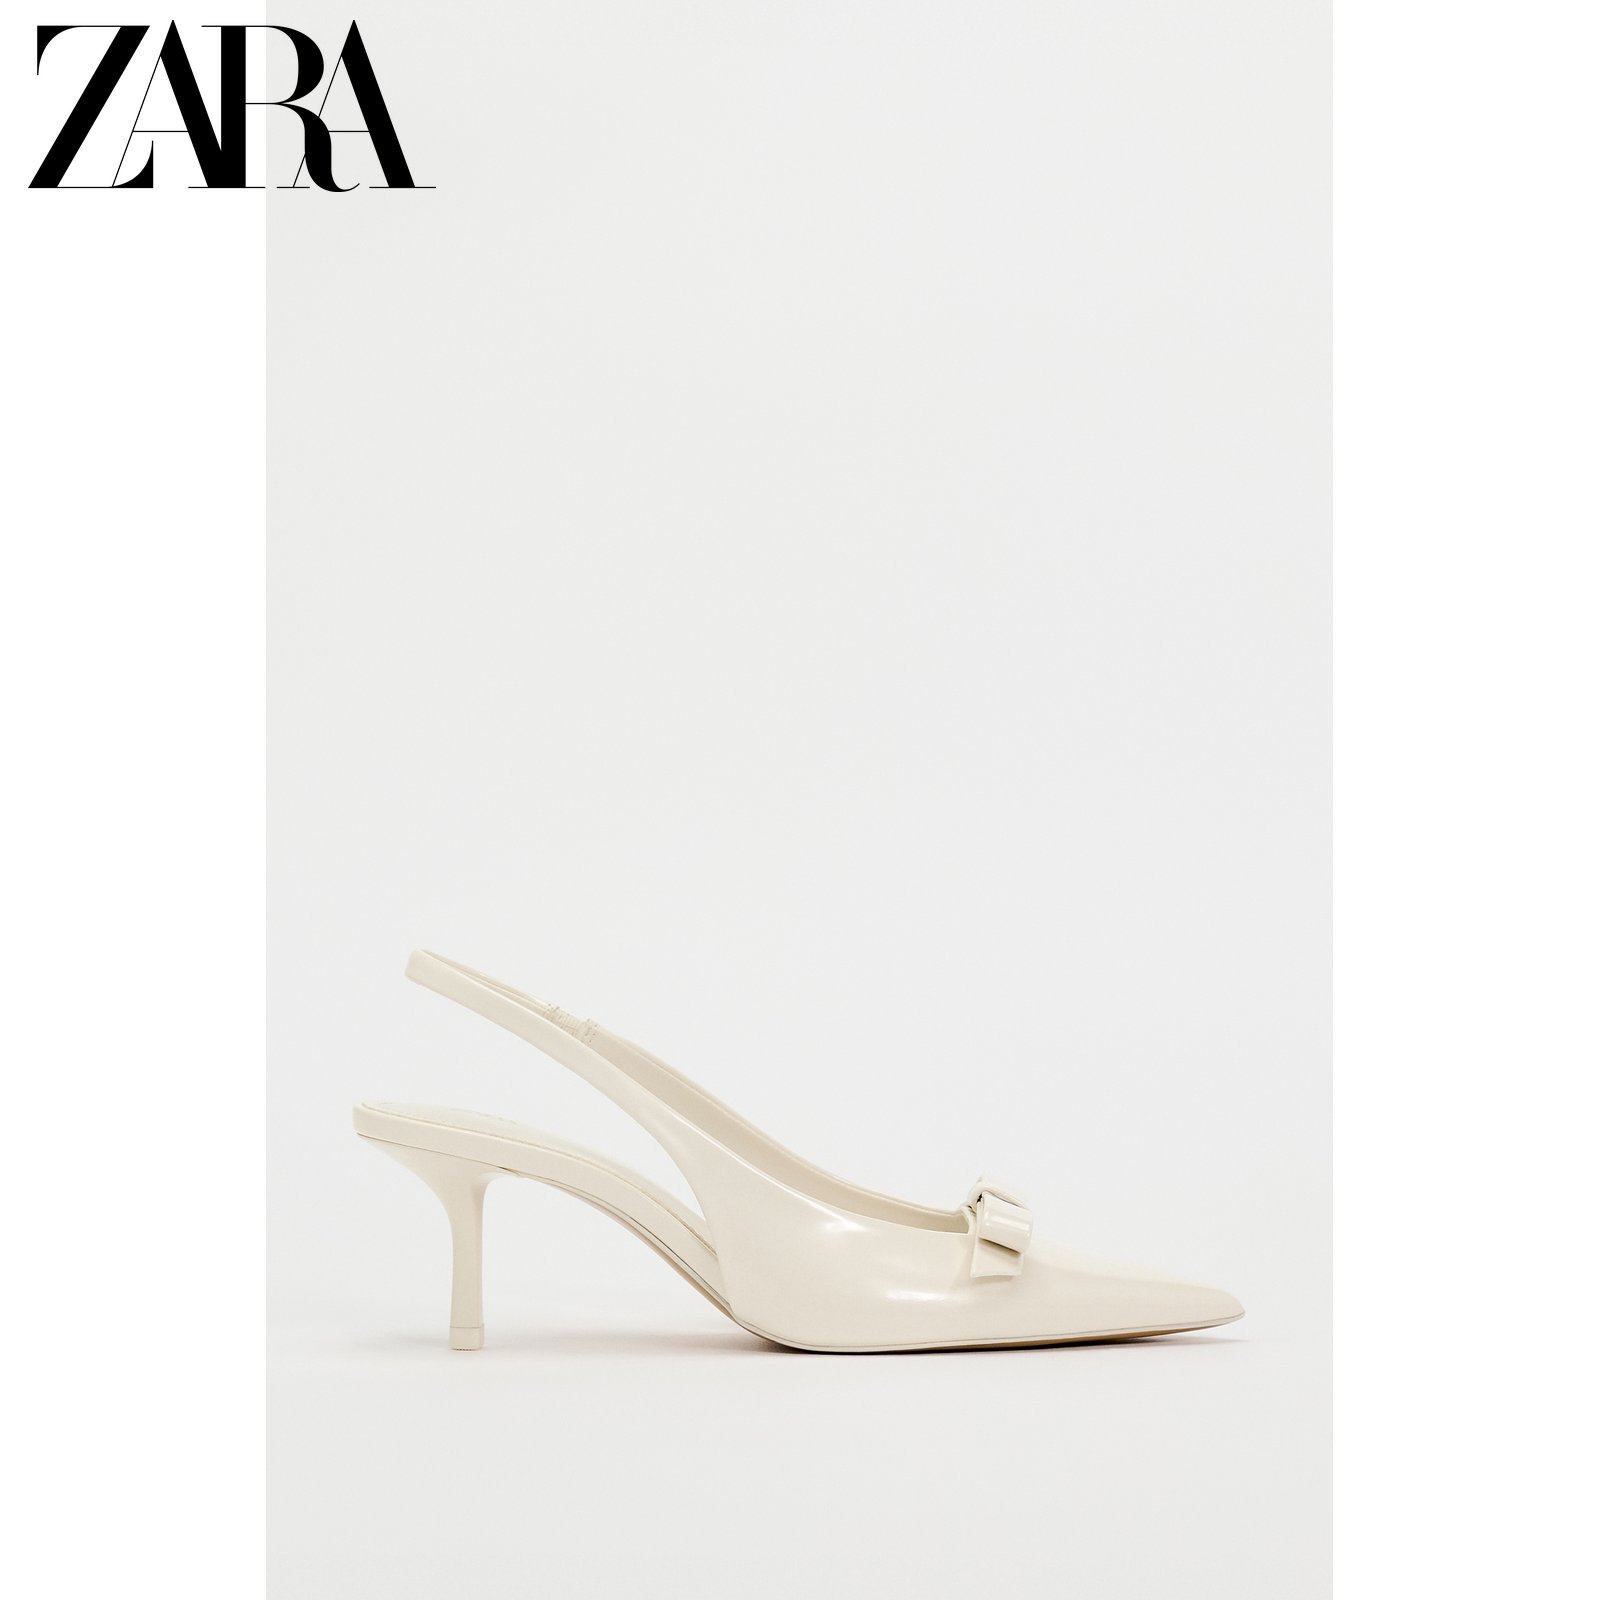 ZARA 春の新作婦人靴 パテントレザー リボン飾り ポインテッドトゥ スリングバック ミュール ハイヒール 2266310 002